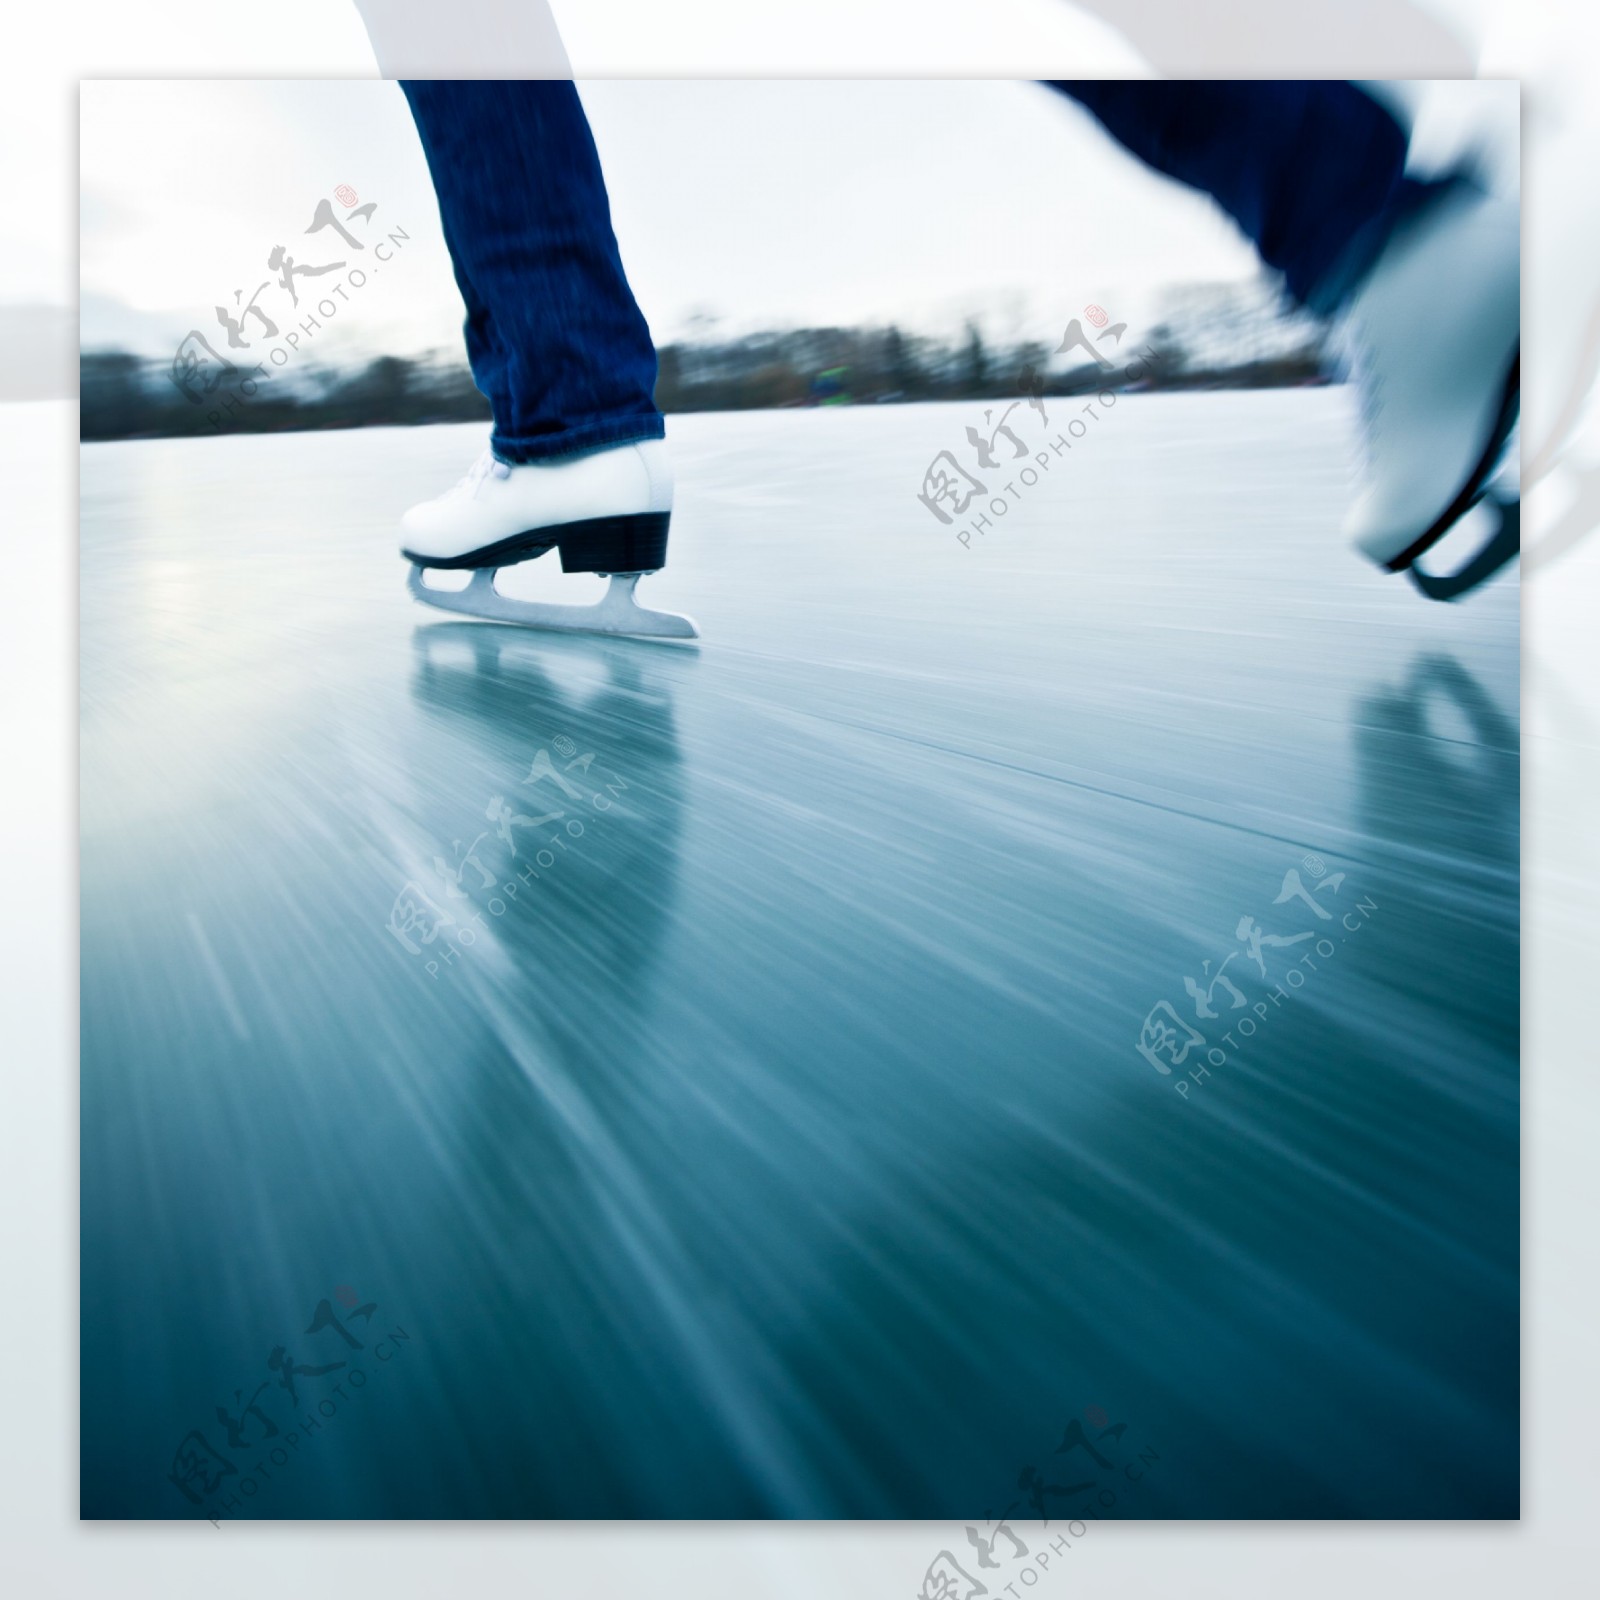 溜冰人物摄影图片